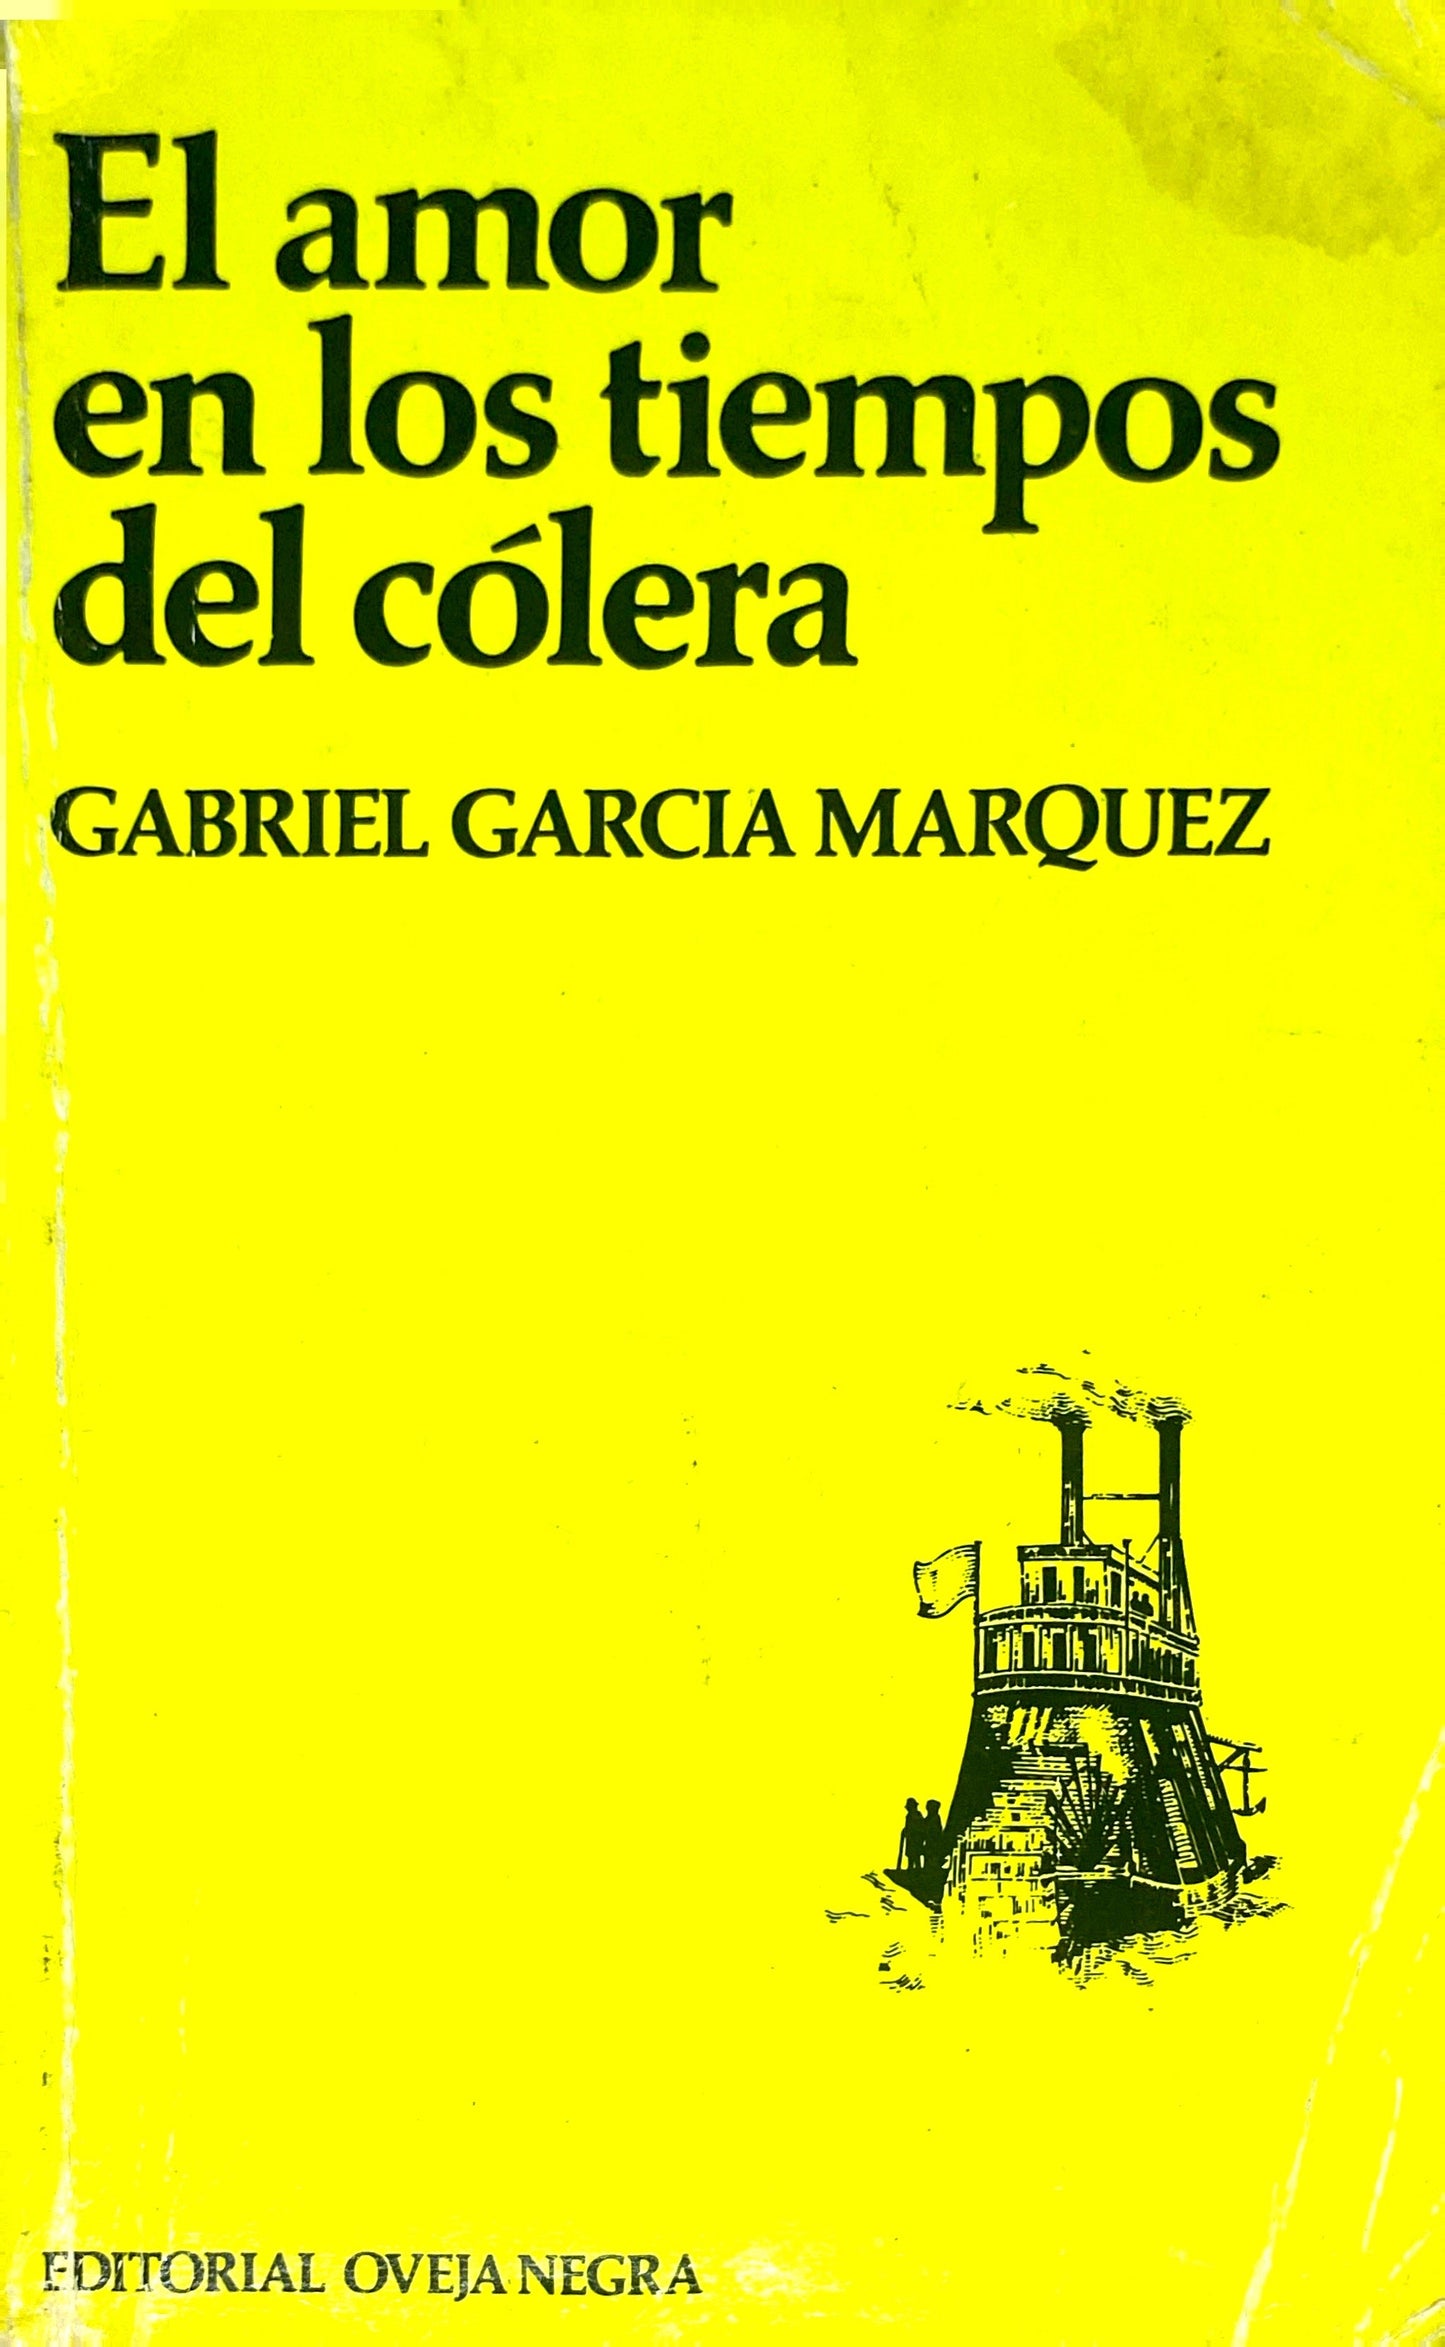 El amor en los tiempos de cólera | Gabriel Garcia Márquez